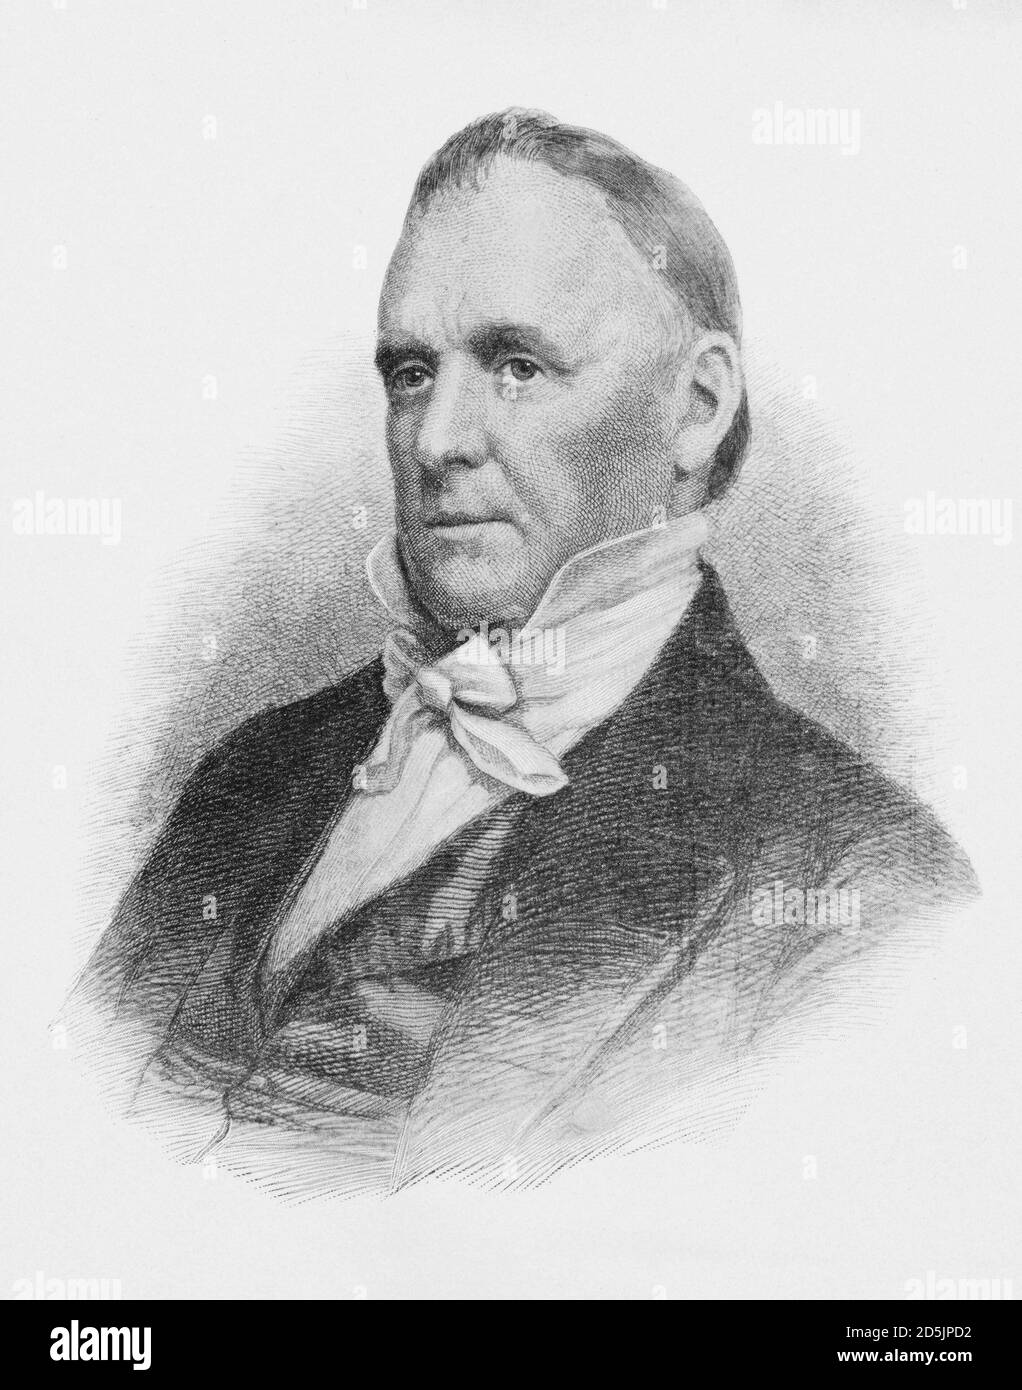 Porträt des Präsidenten James Buchanan Jr. James Buchanan Jr. (1791 – 1868) war ein amerikanischer Anwalt und Politiker, der als 15. Präsident der Th diente Stockfoto